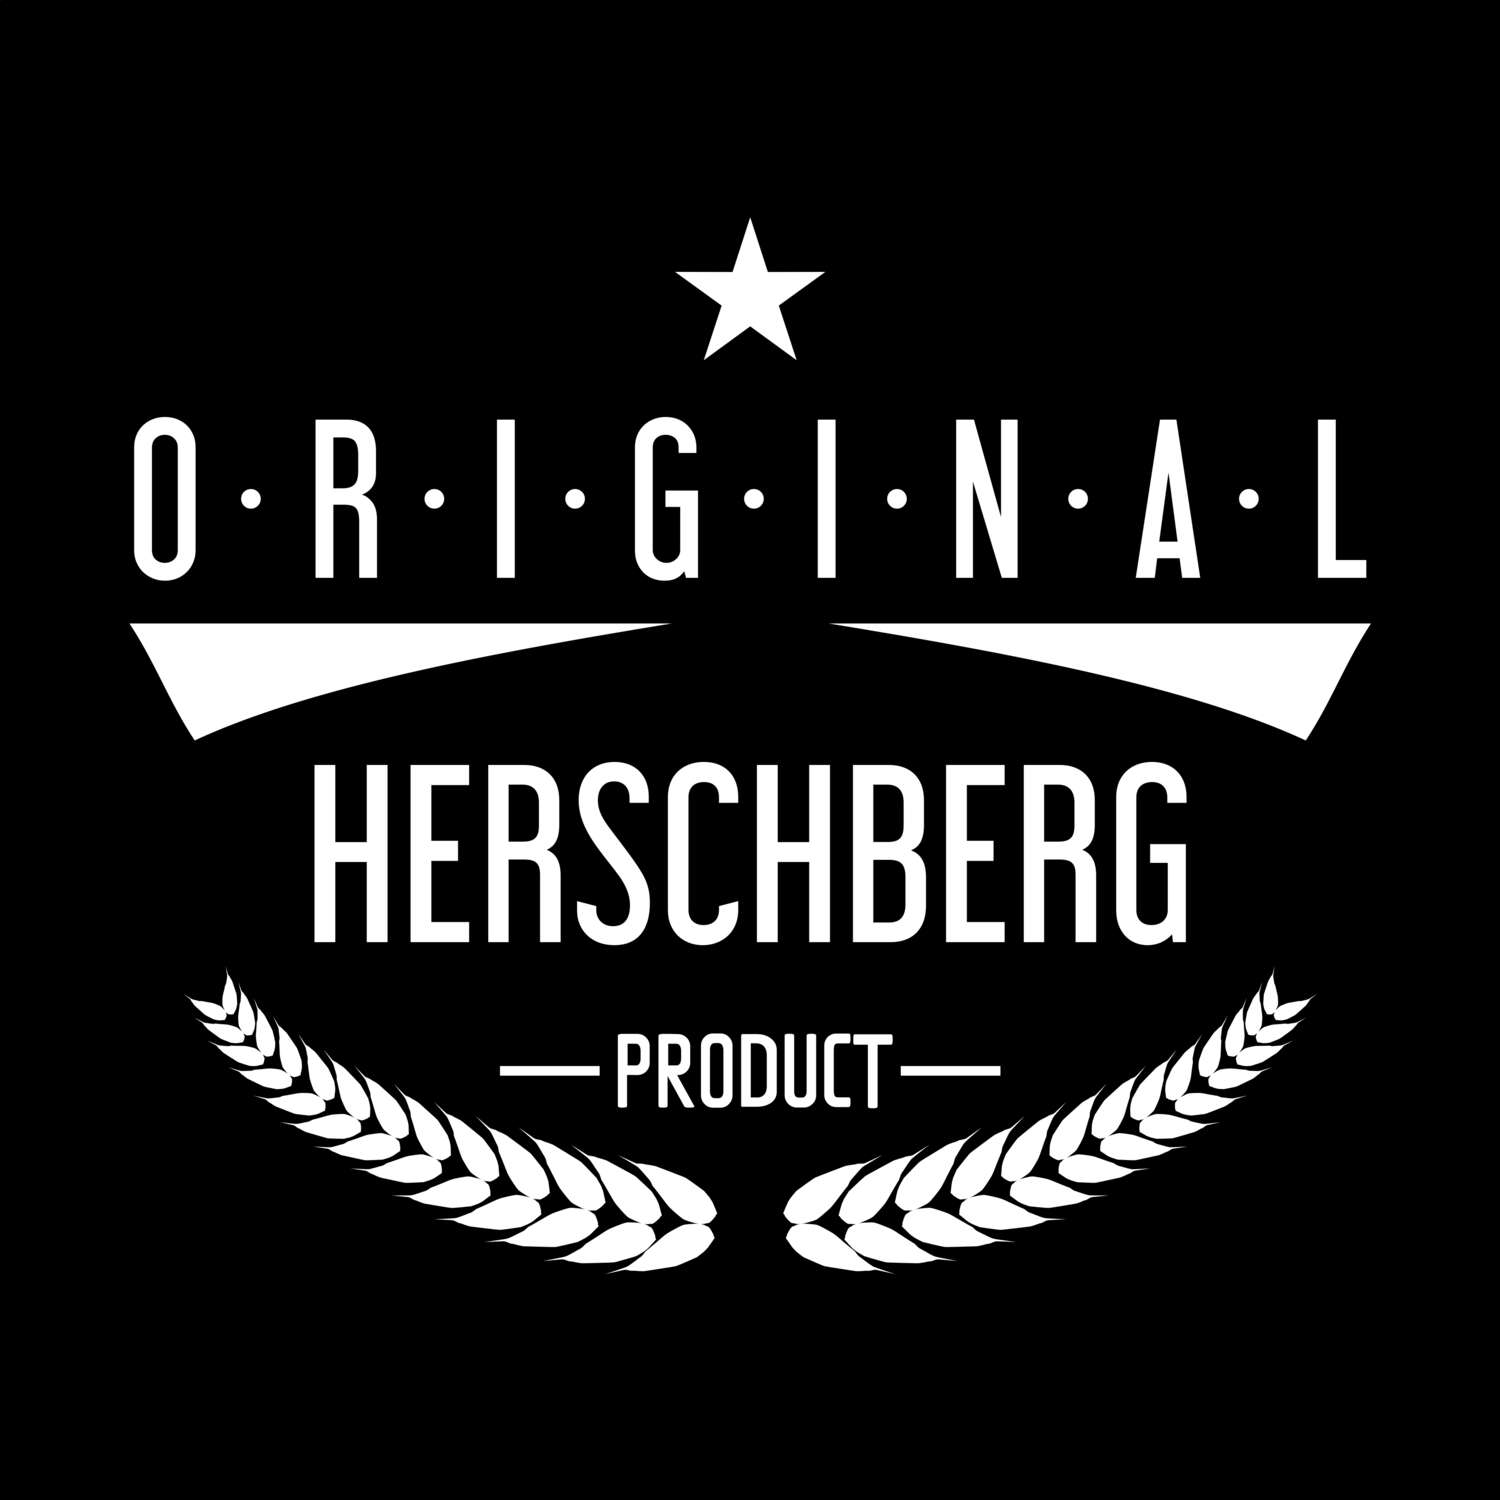 Herschberg T-Shirt »Original Product«